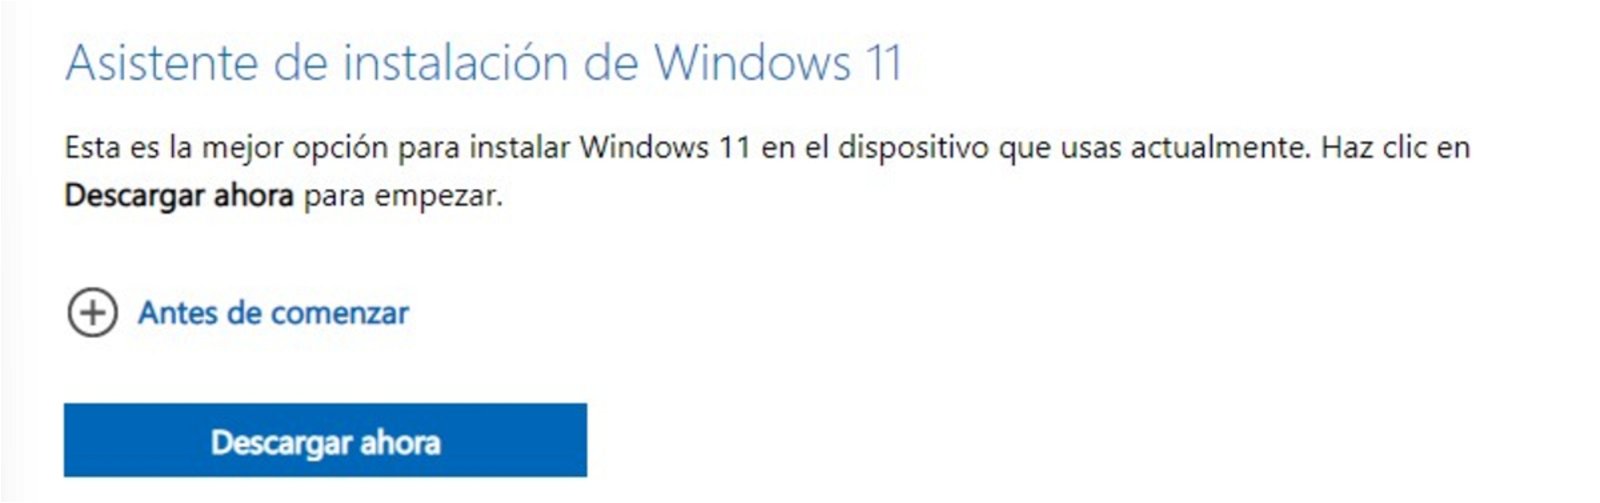 Come eseguire l'aggiornamento a Windows 11 da Windows 10 passo dopo passo